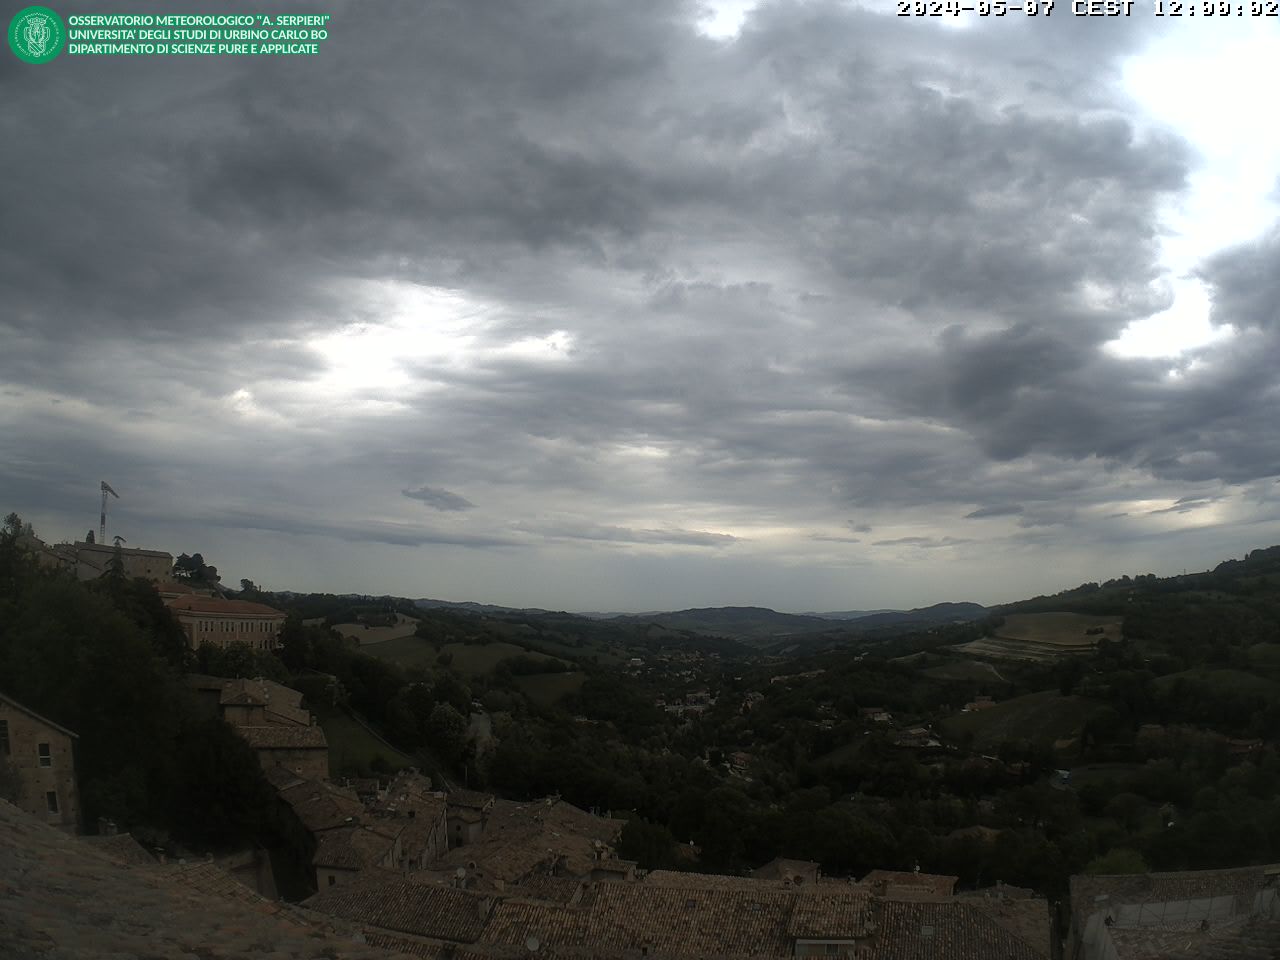 Webcam Urbino - Oss. Meteorologico Alessandro Serpieri - Università degli Studi di Urbino